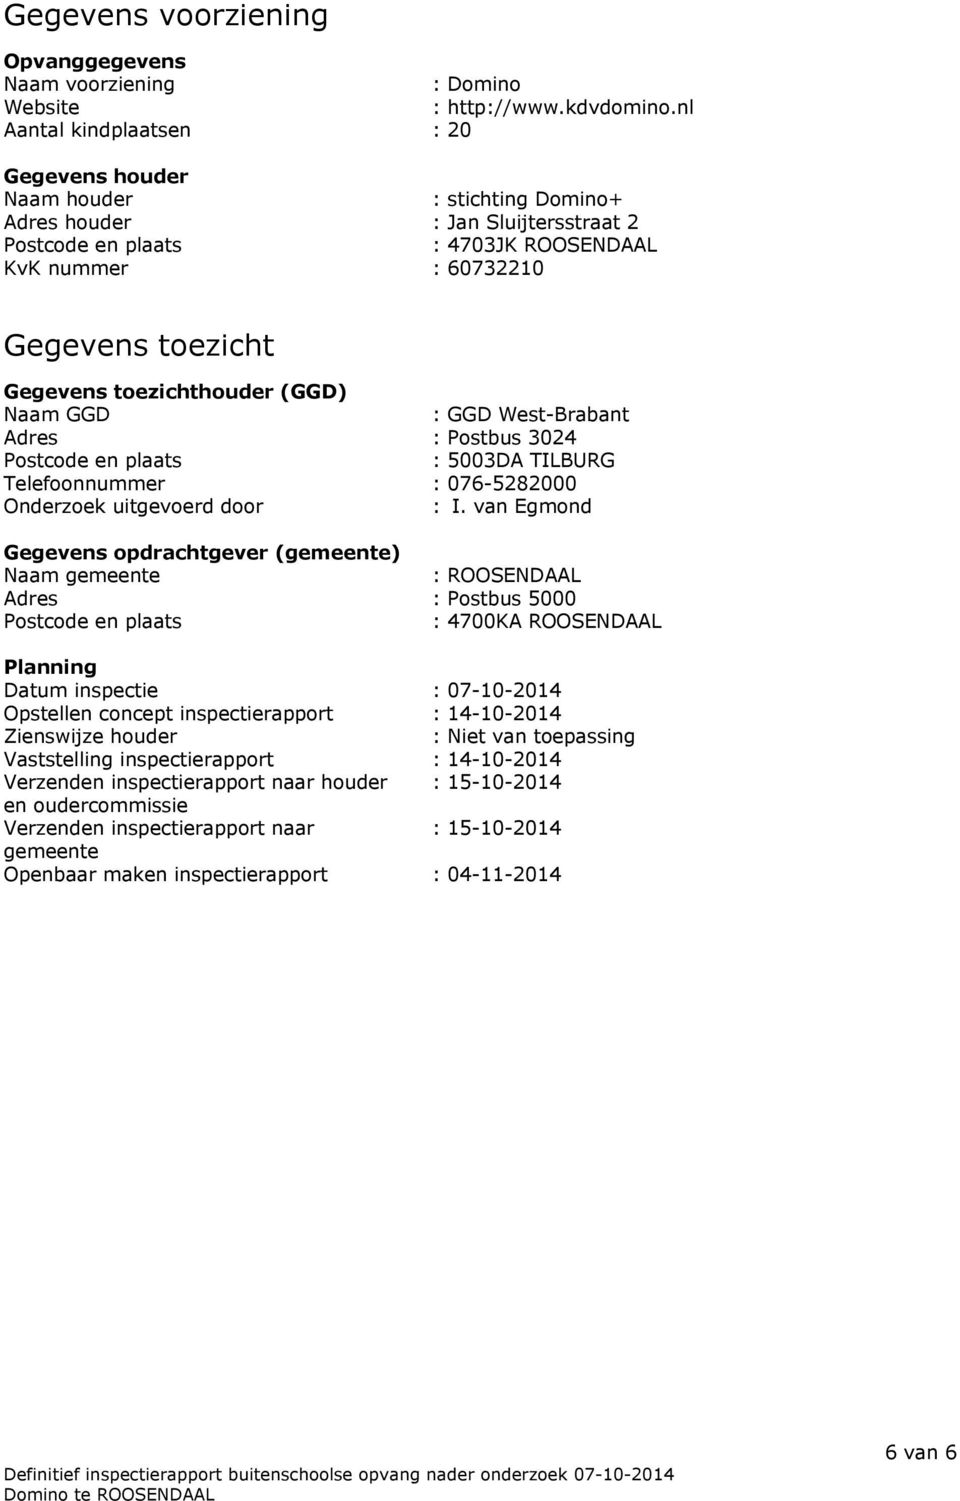 Gegevens toezichthouder (GGD) Naam GGD : GGD West-Brabant Adres : Postbus 3024 Postcode en plaats : 5003DA TILBURG Telefoonnummer : 076-5282000 Onderzoek uitgevoerd door : I.